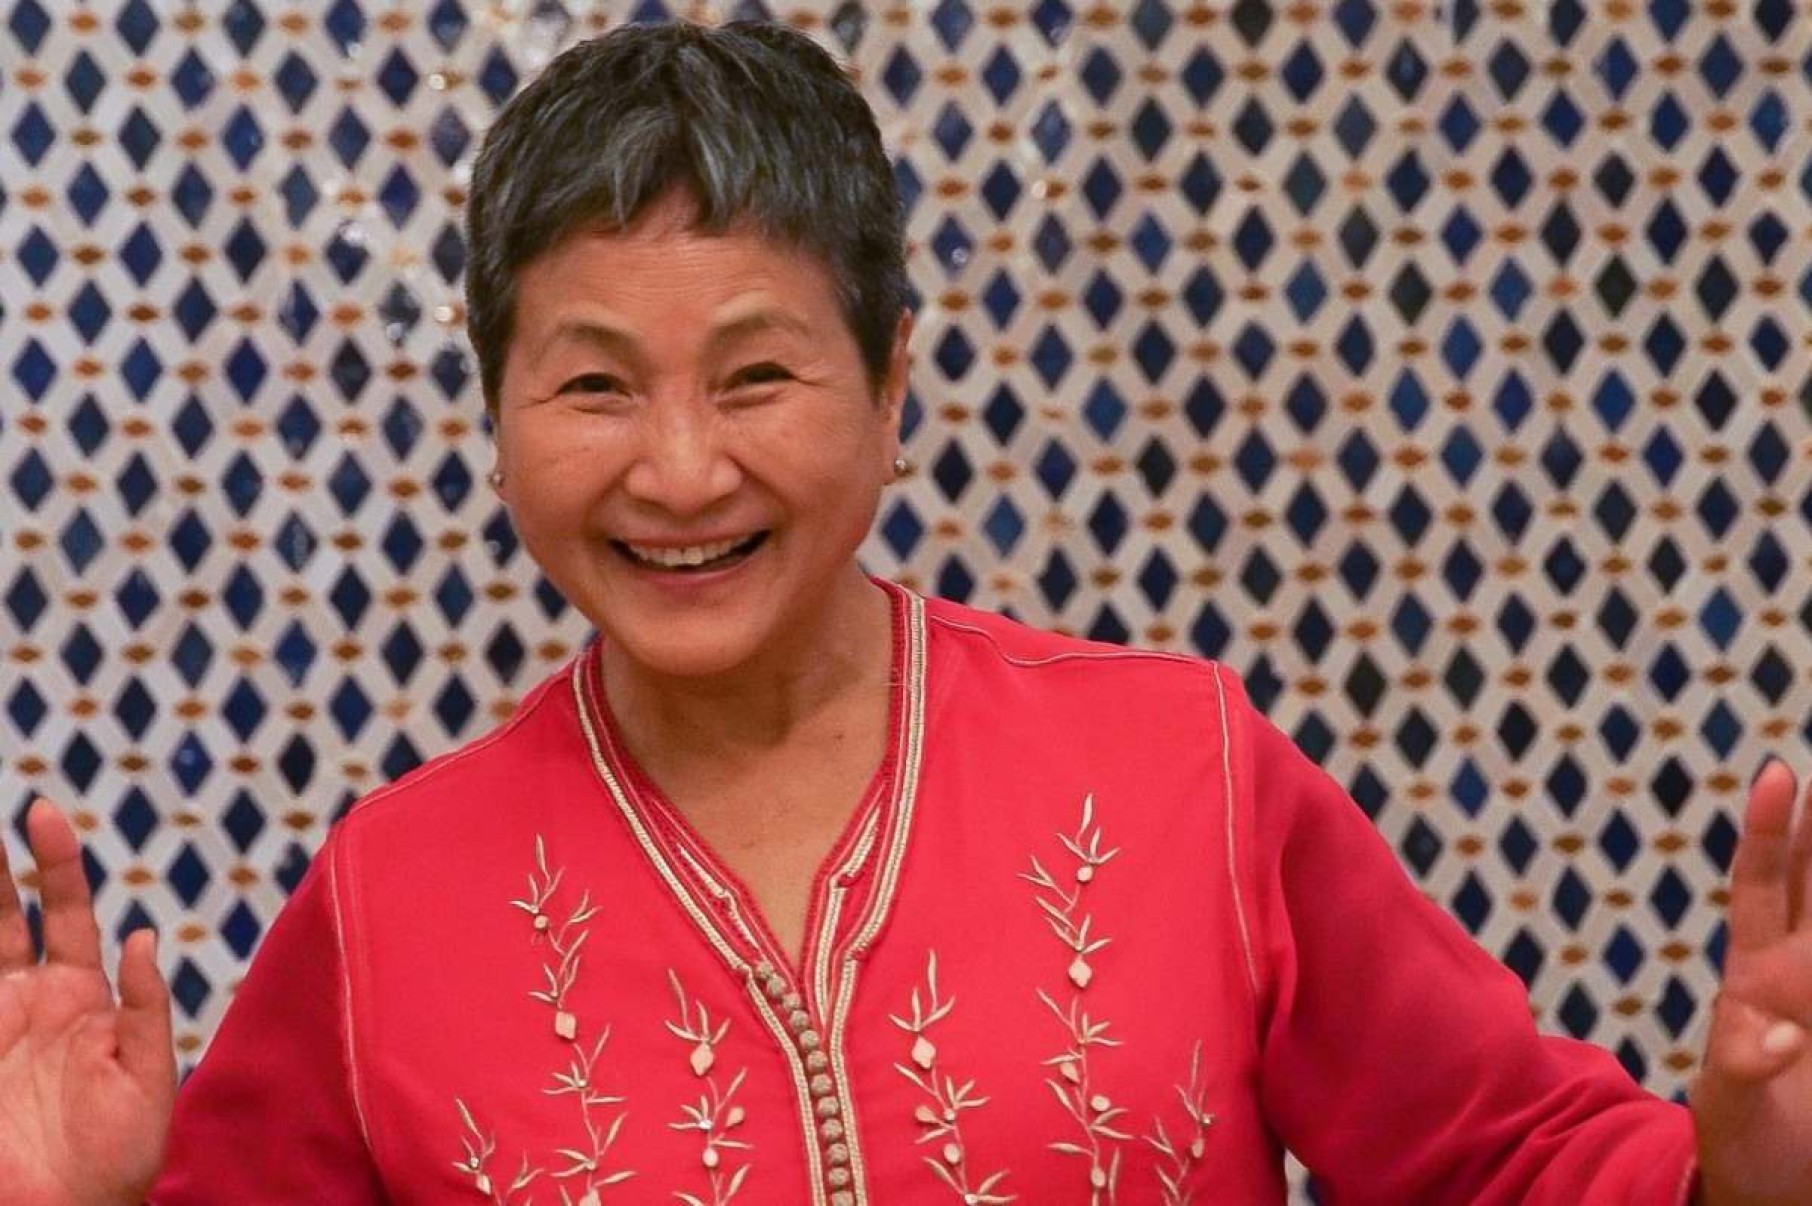 Morre Cheng Pei-pei, a atriz de 'O tigre e o dragão', aos 78 anos